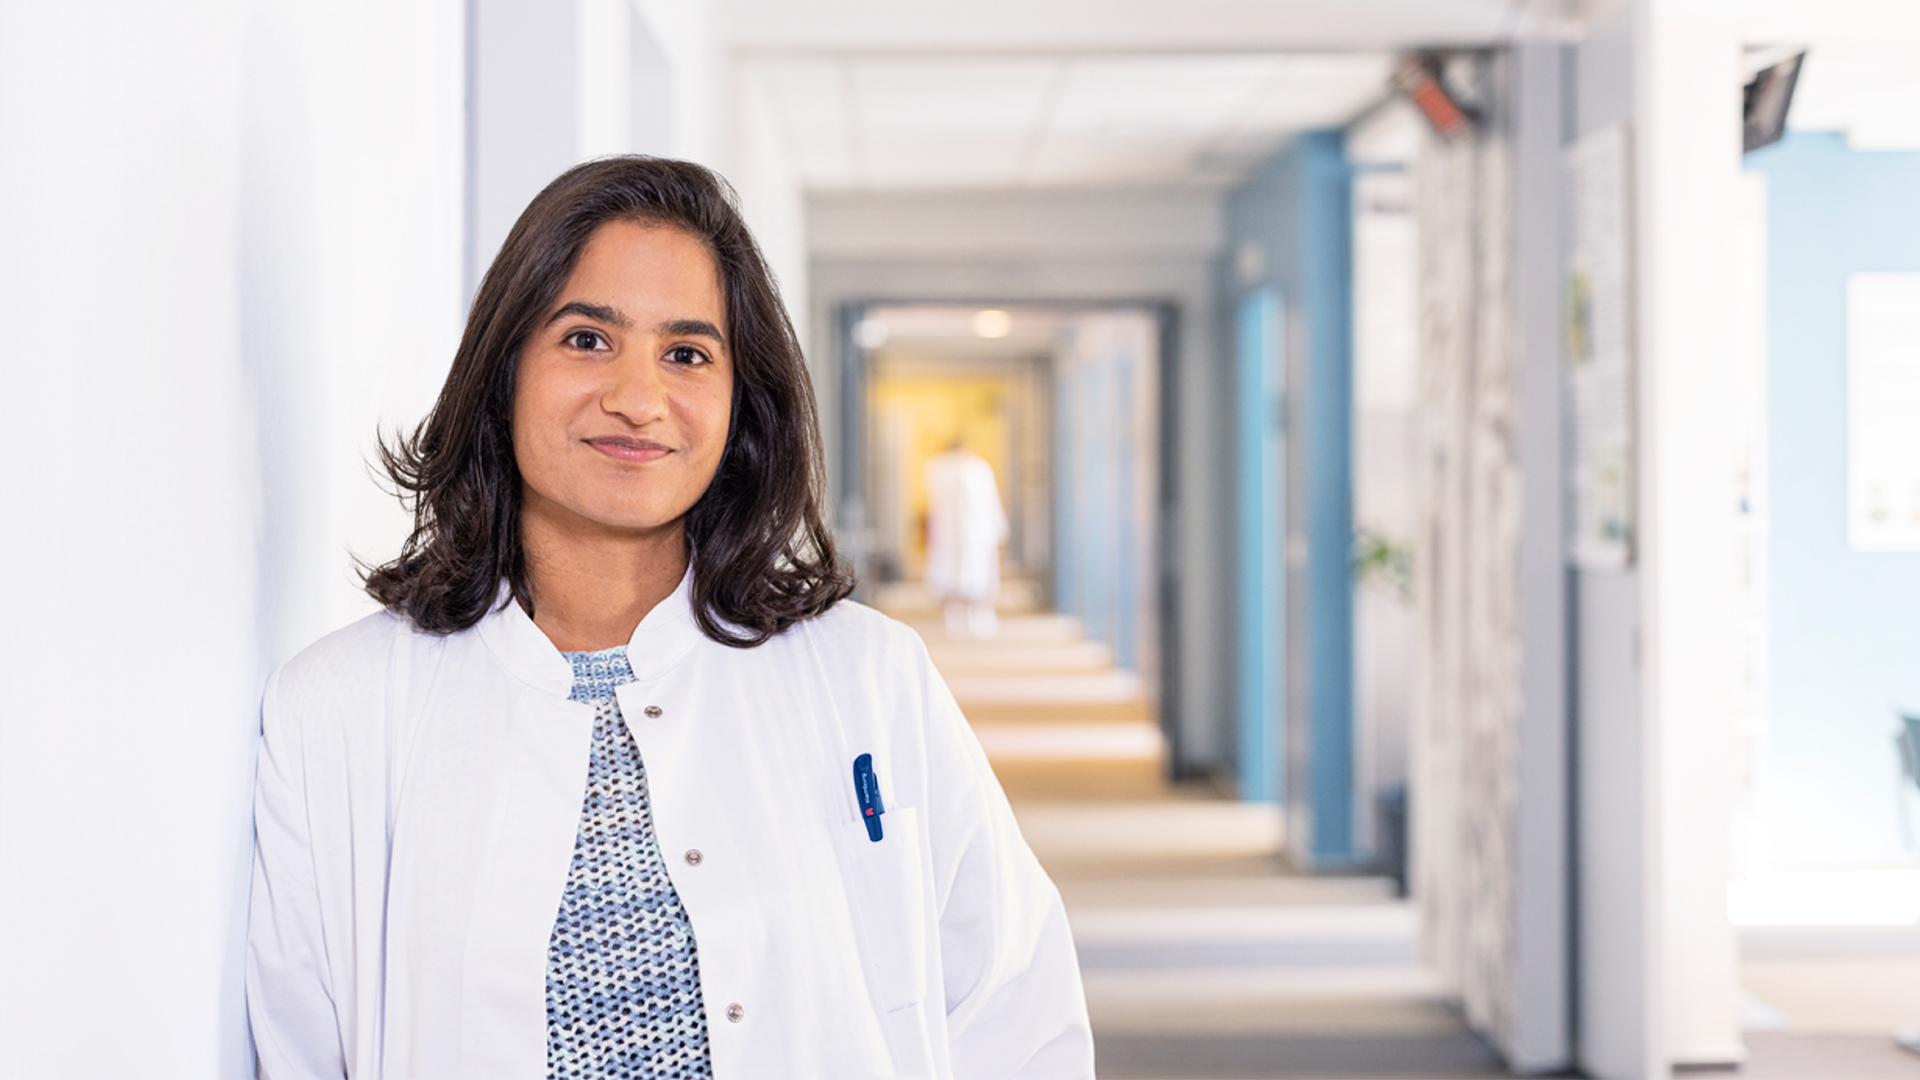 Eine junge Frau in einem weißen Kittel steht in einem Krankenhausflur und lächelt in die Kamera.